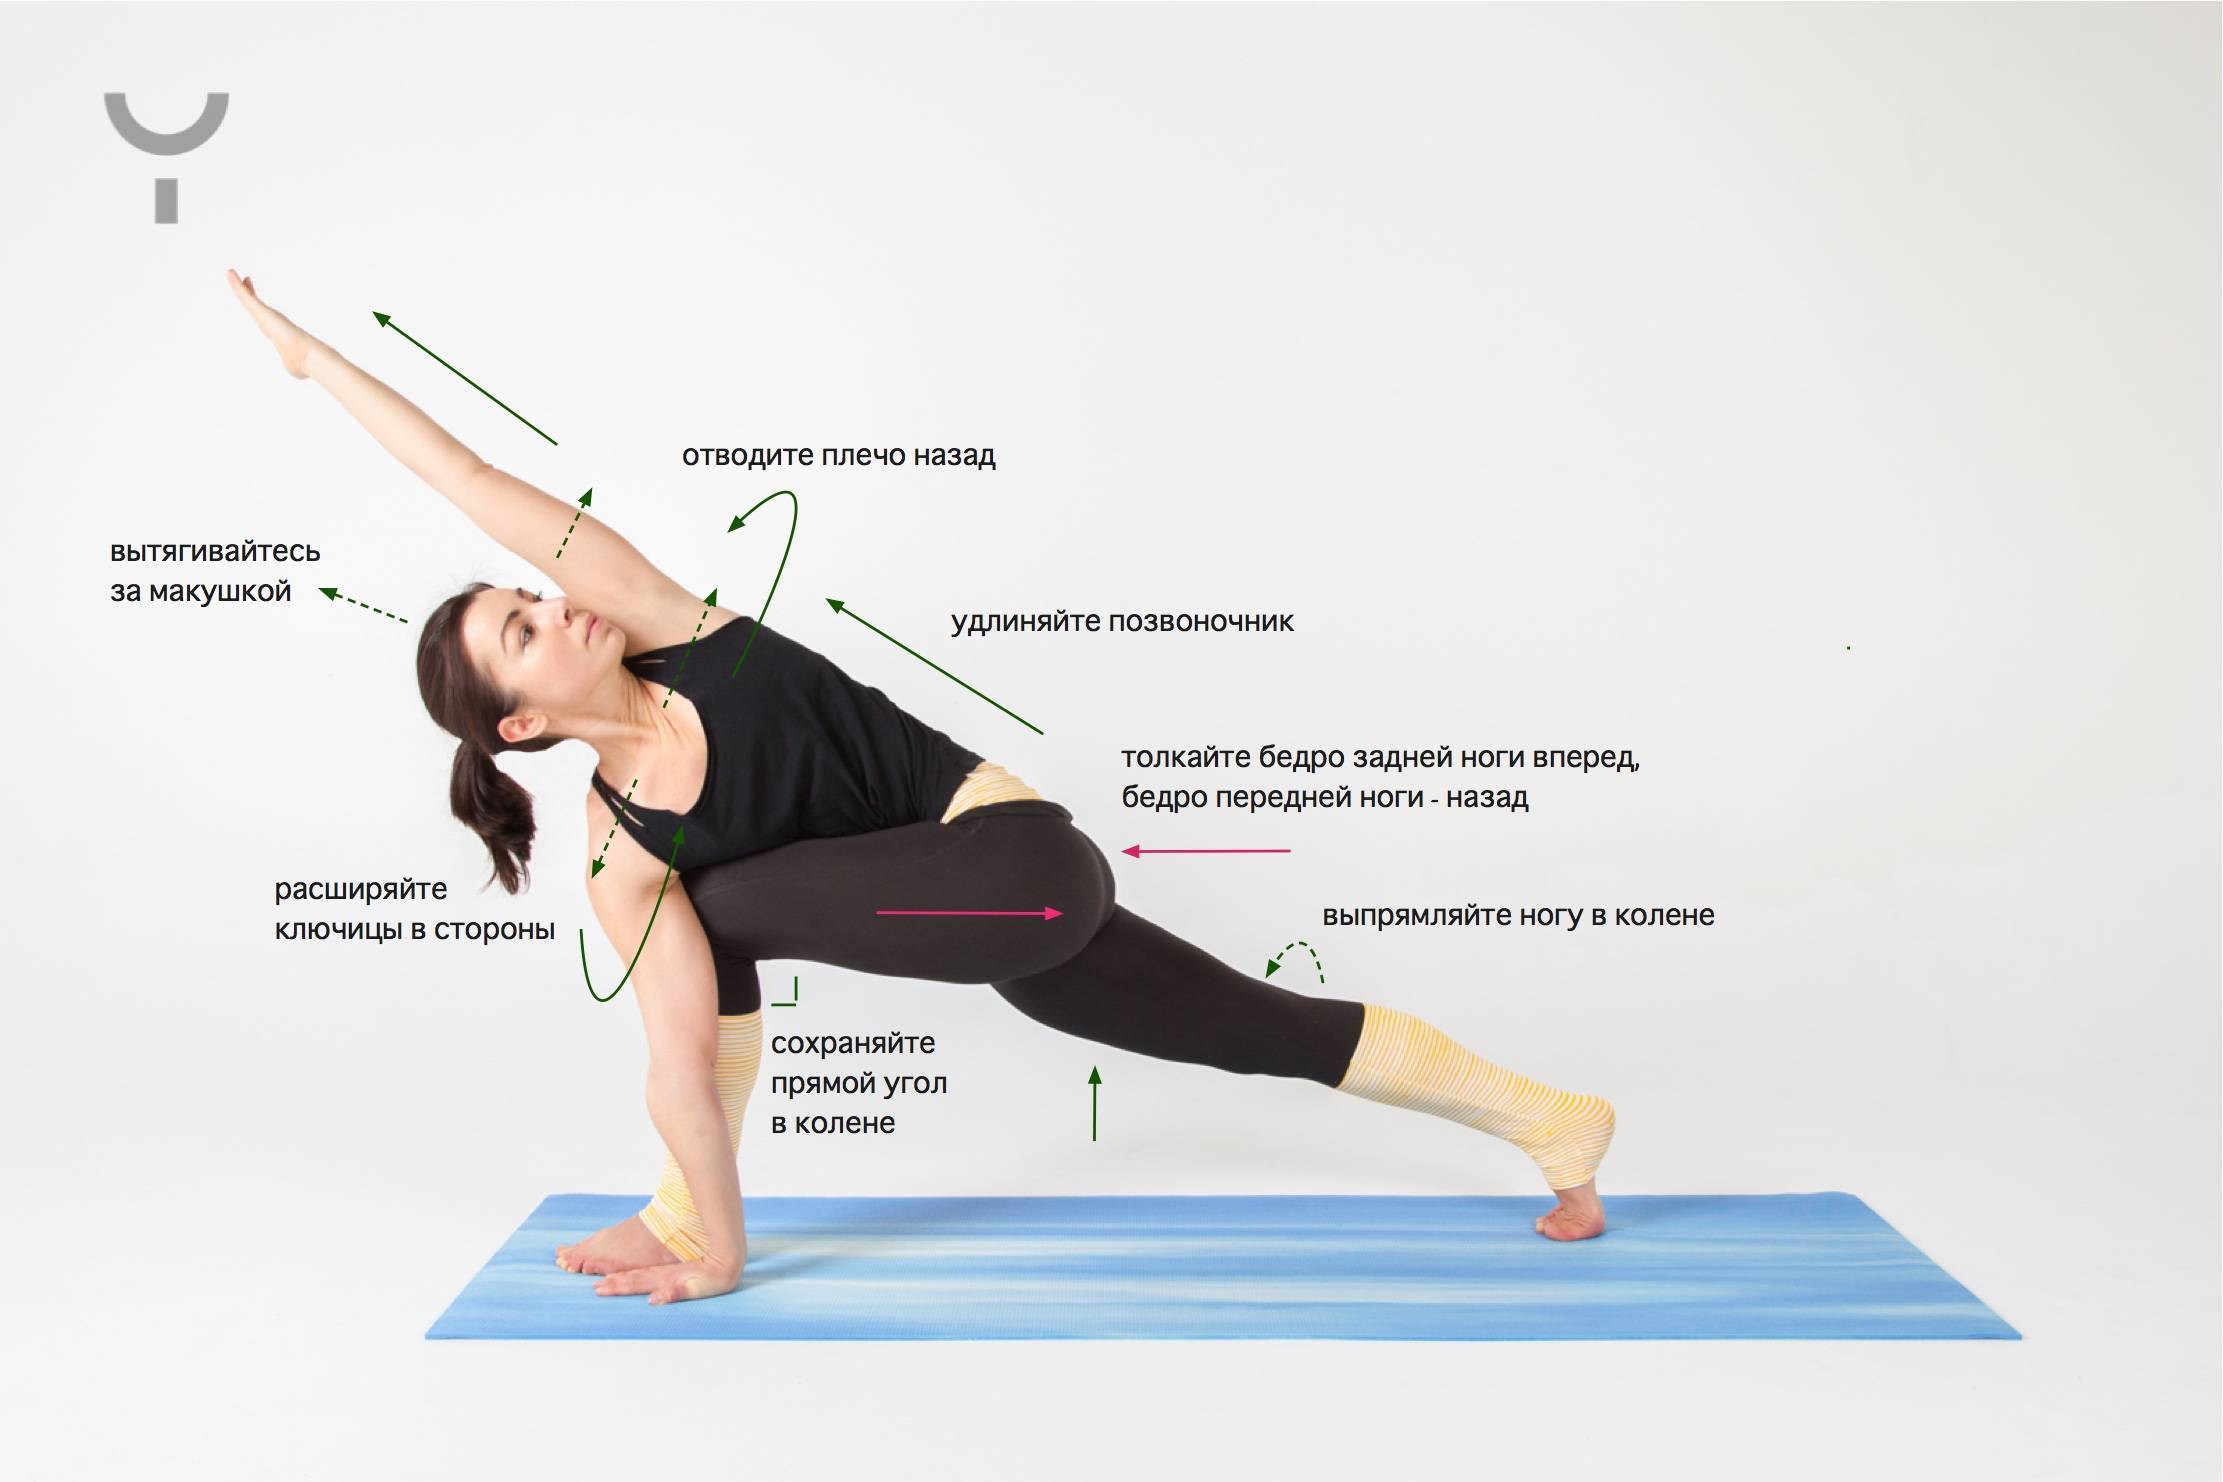 Составление комплекса упражнений йоги: общие принципы. - psy yoga studio - psy yoga studioменс физик — пляжный бодибилдинг — men`s physique